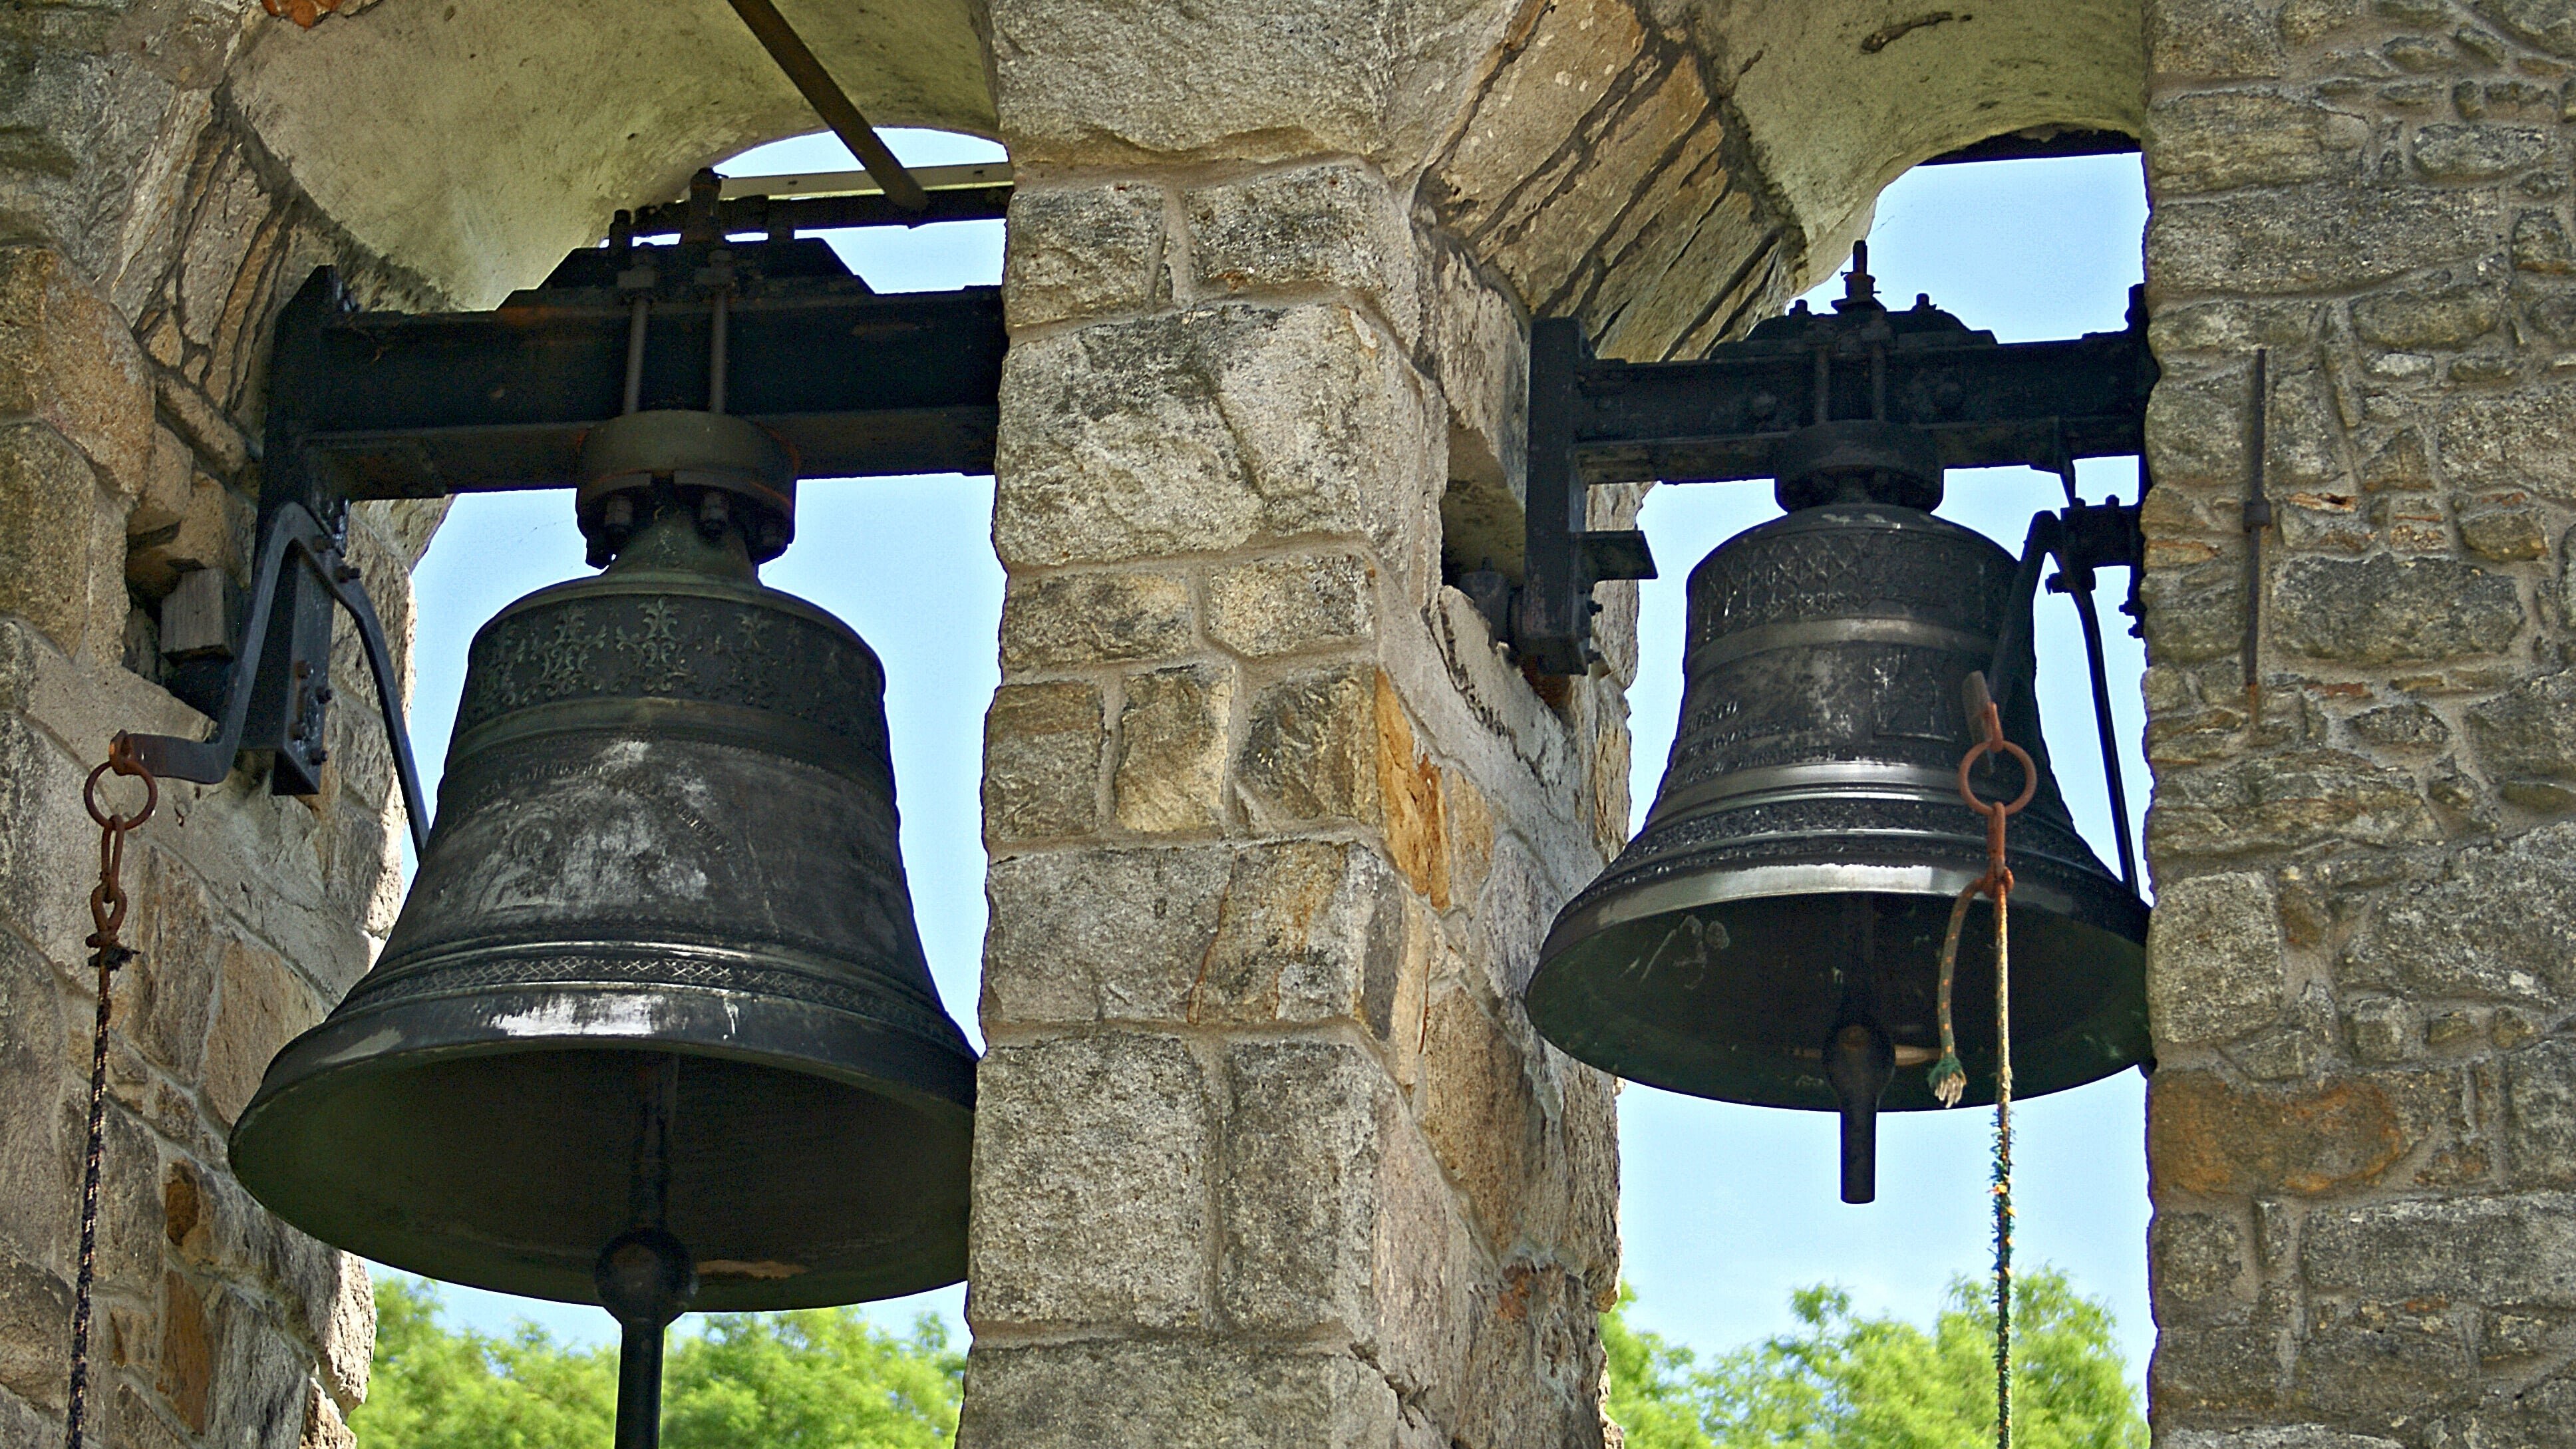 Glockenläuten aus der Stiftskirche Baumburg im Chiemgau